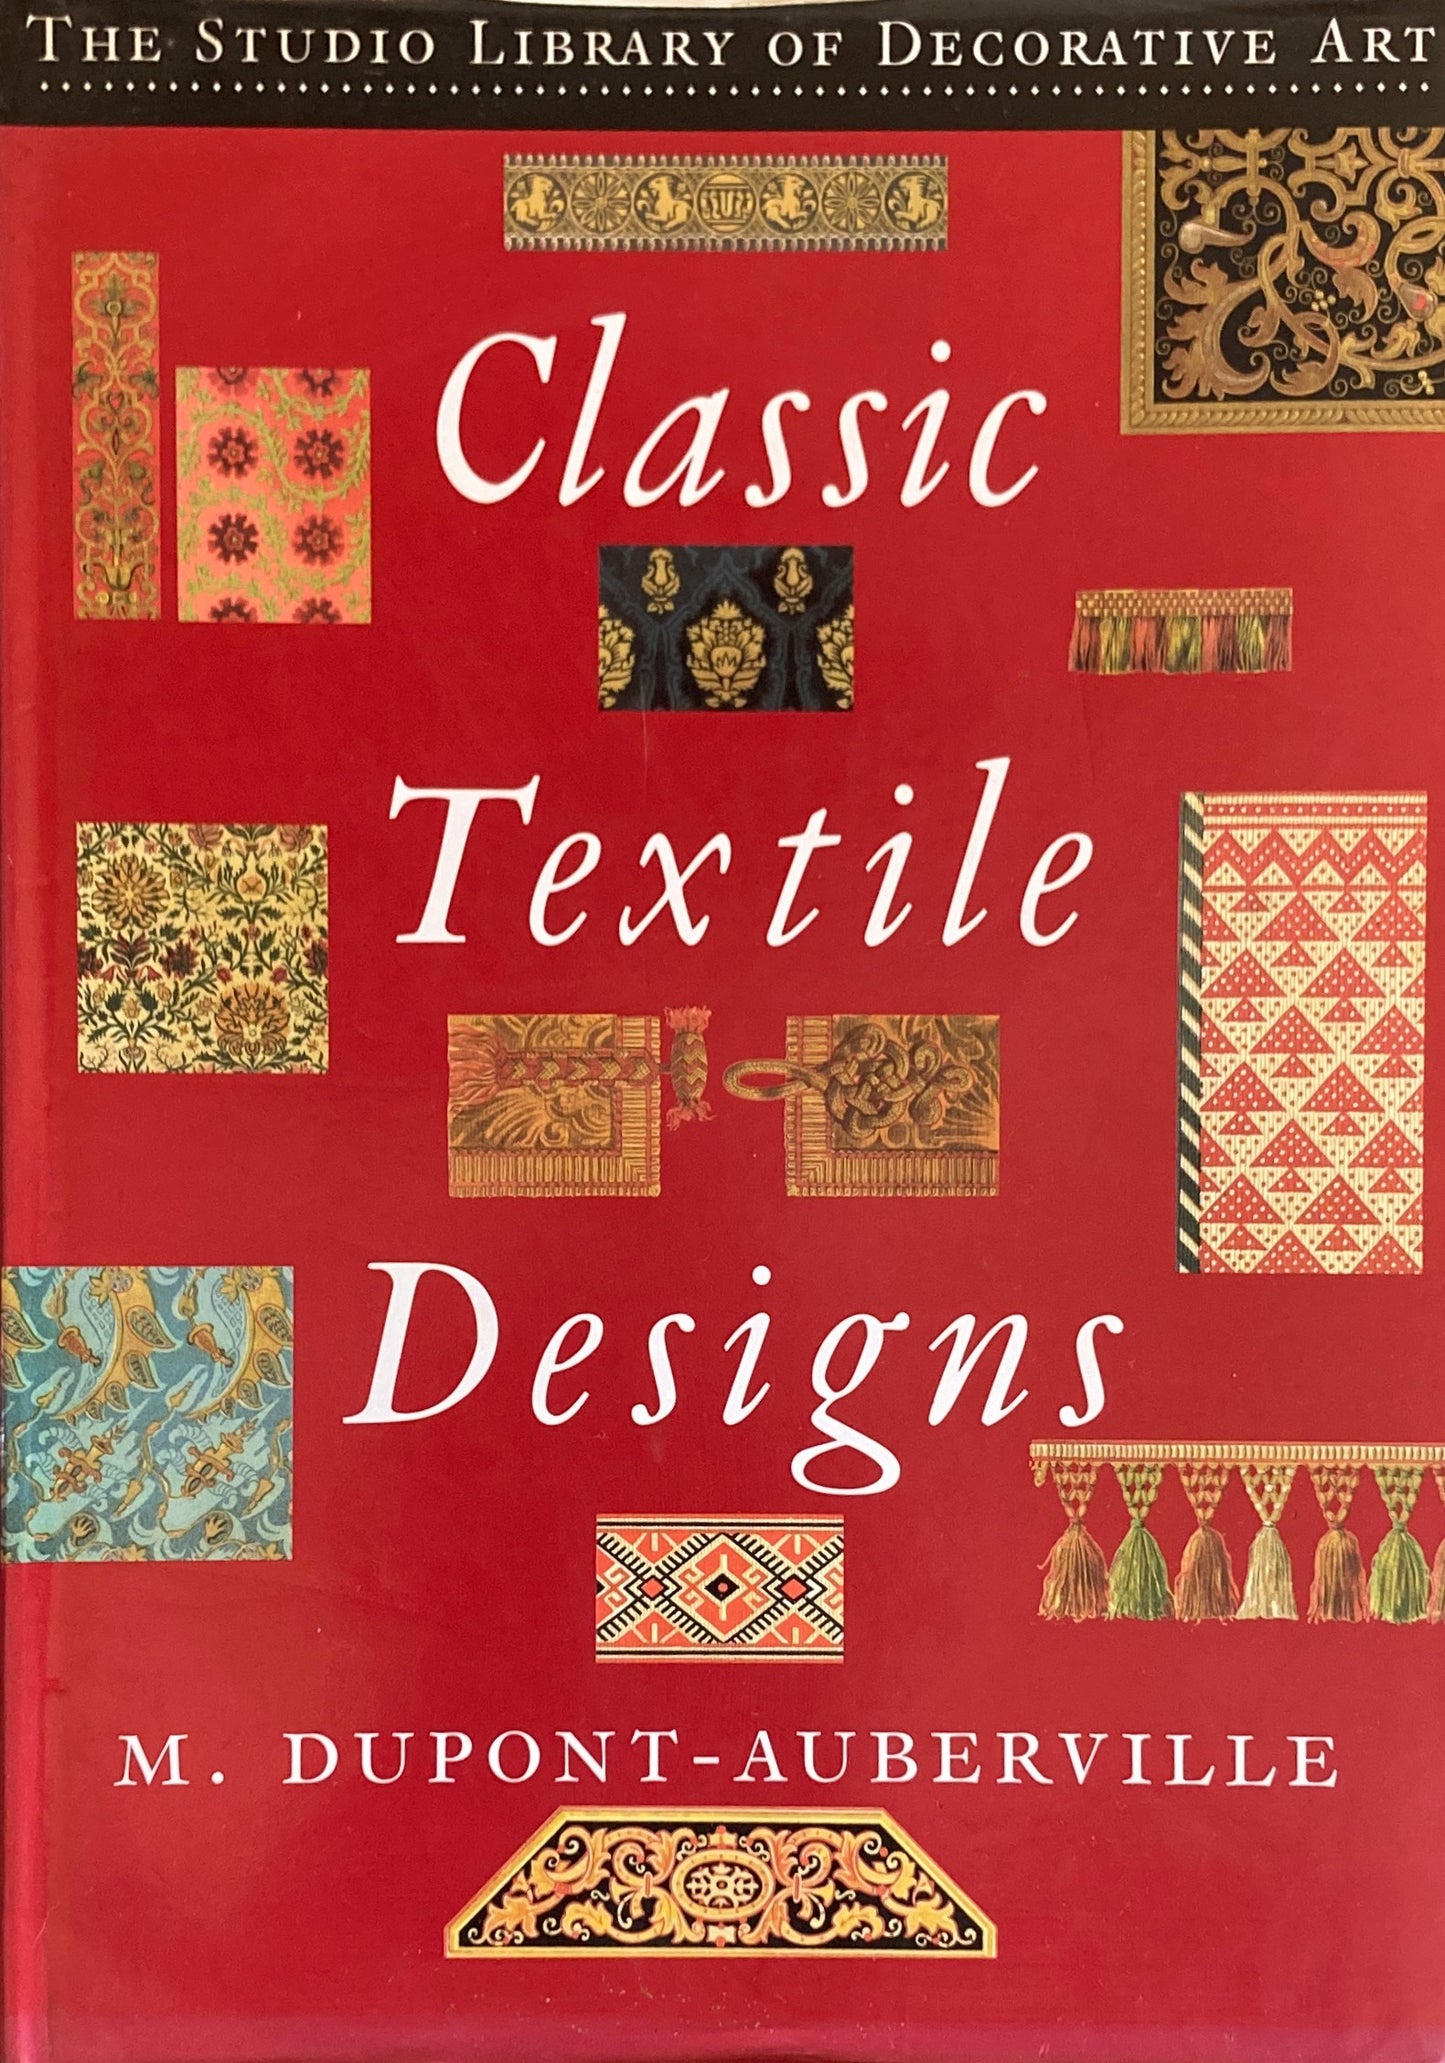 Classic Textile Designs　M. Dupont-Auberville